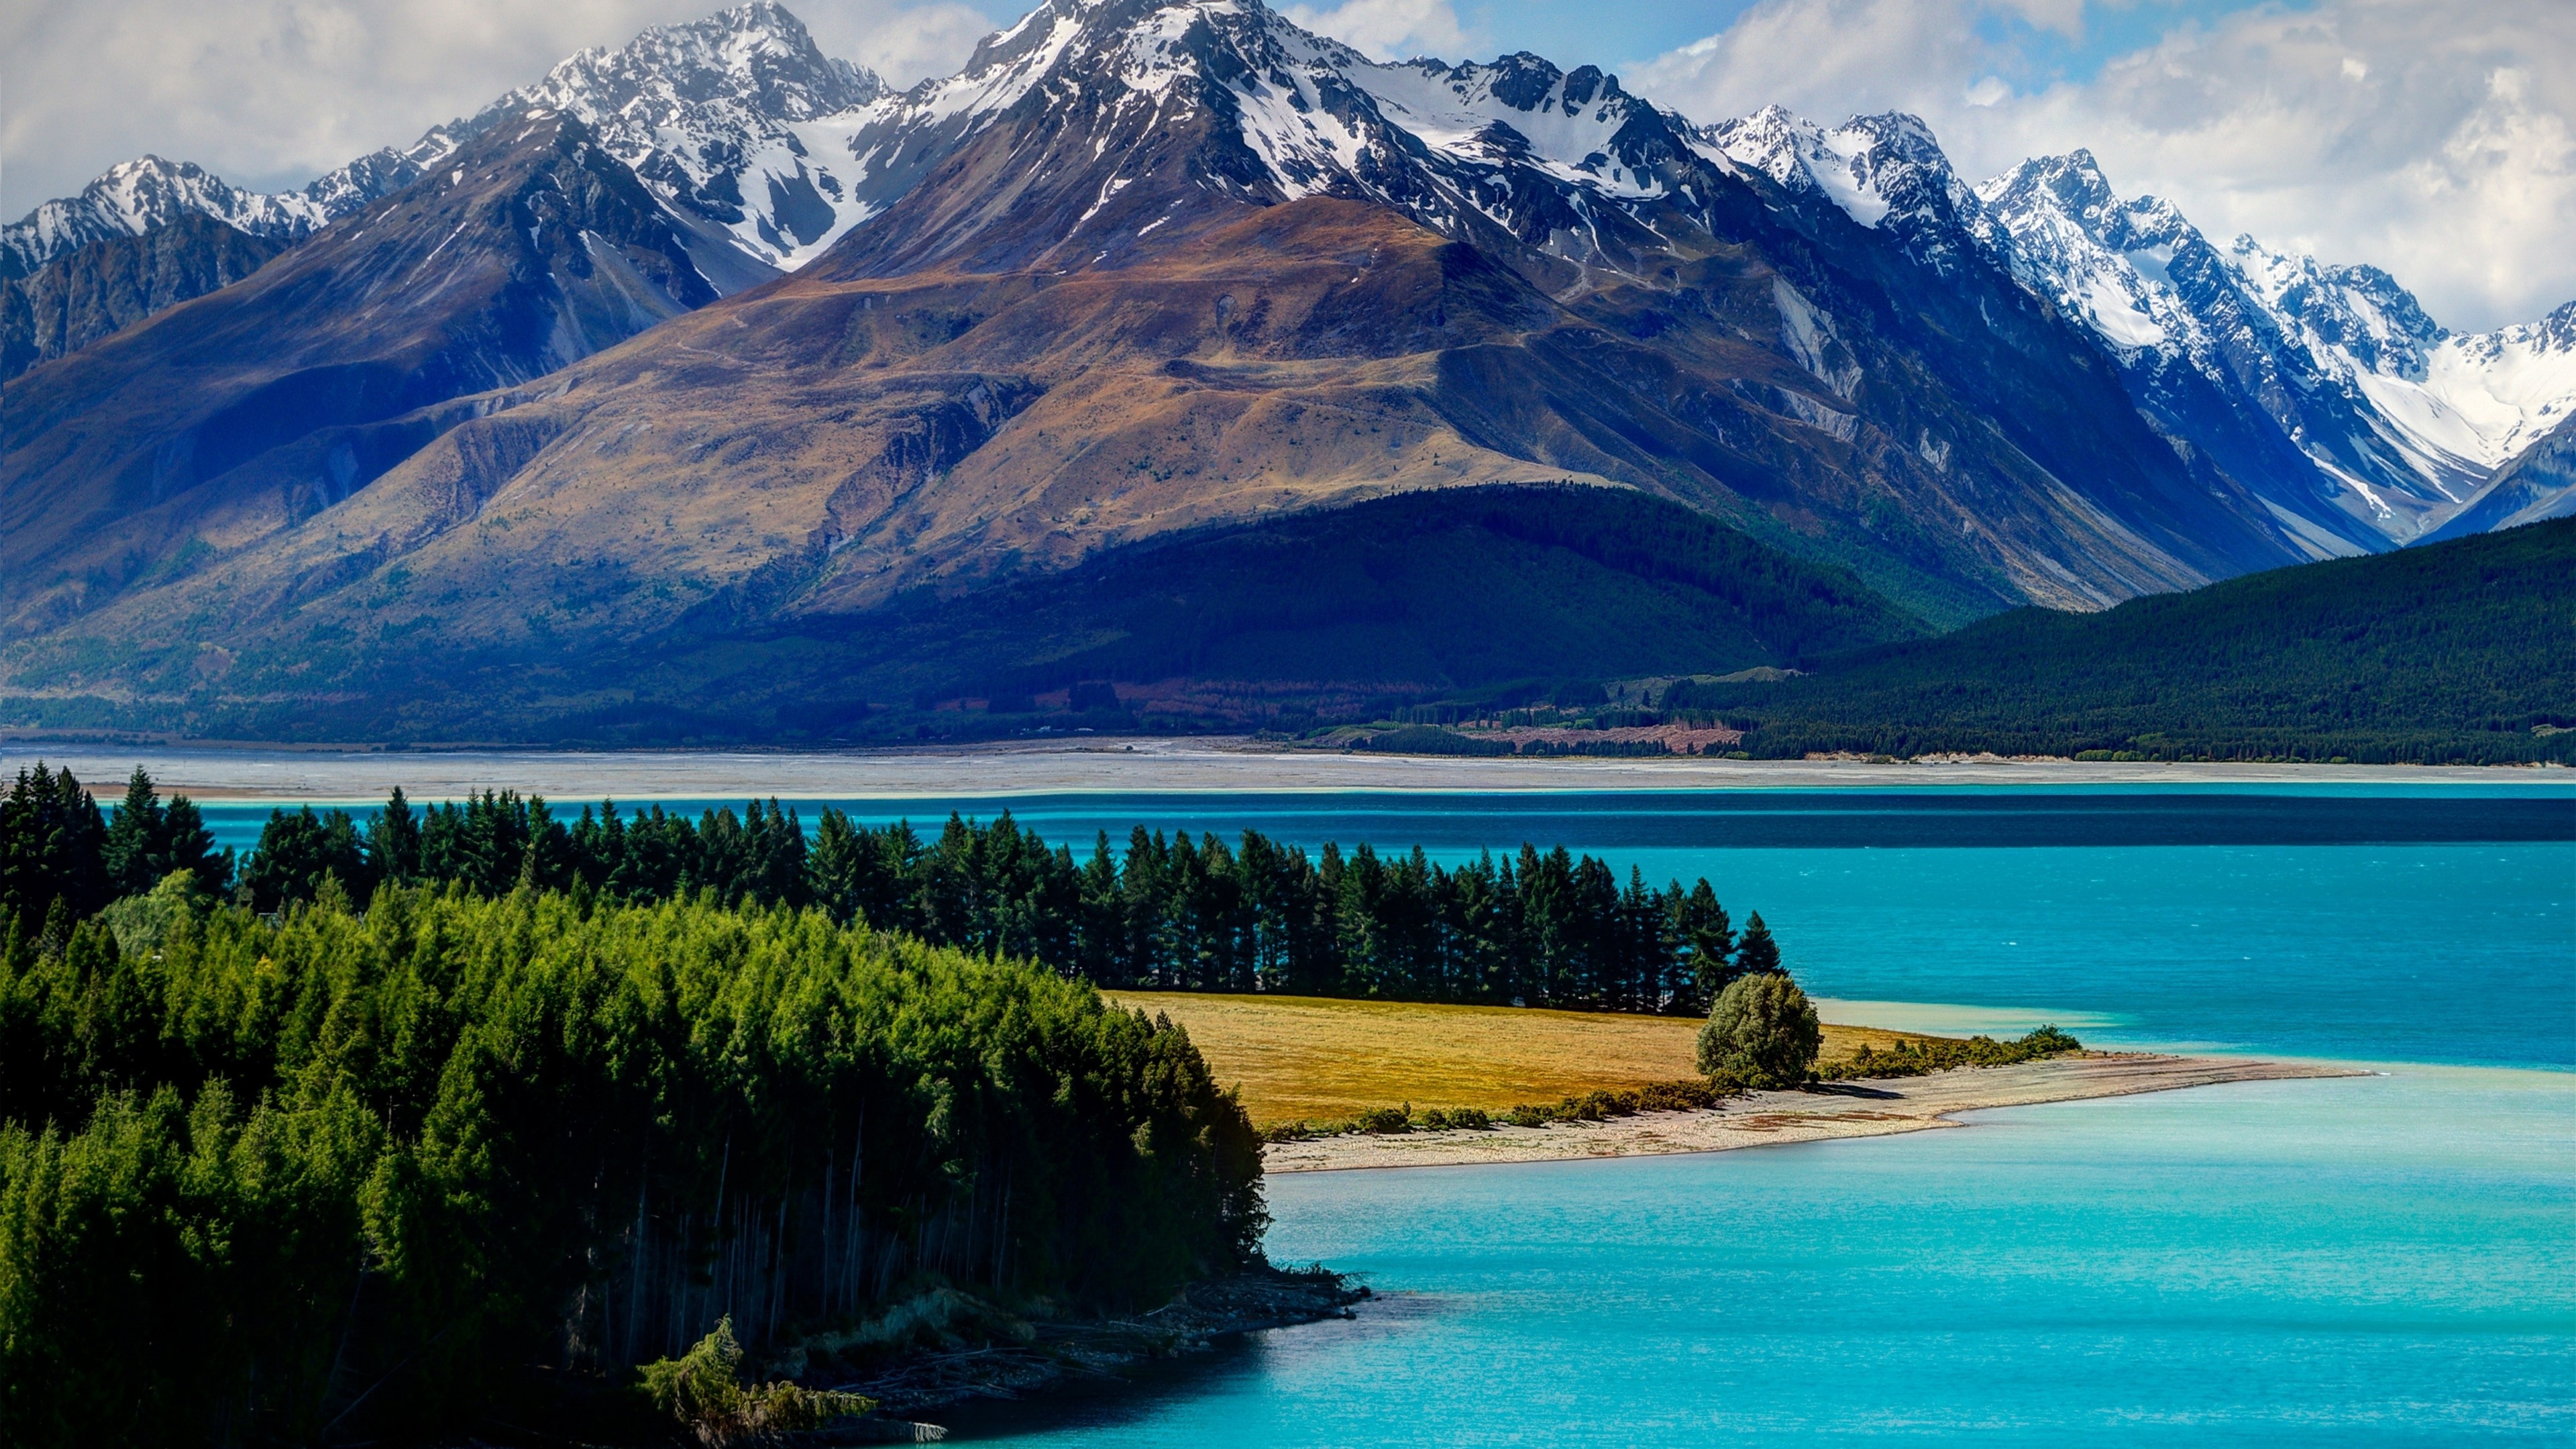 Blue Lake, New Zealand, Lake Tekapo travels, 3840x2160 4K Desktop